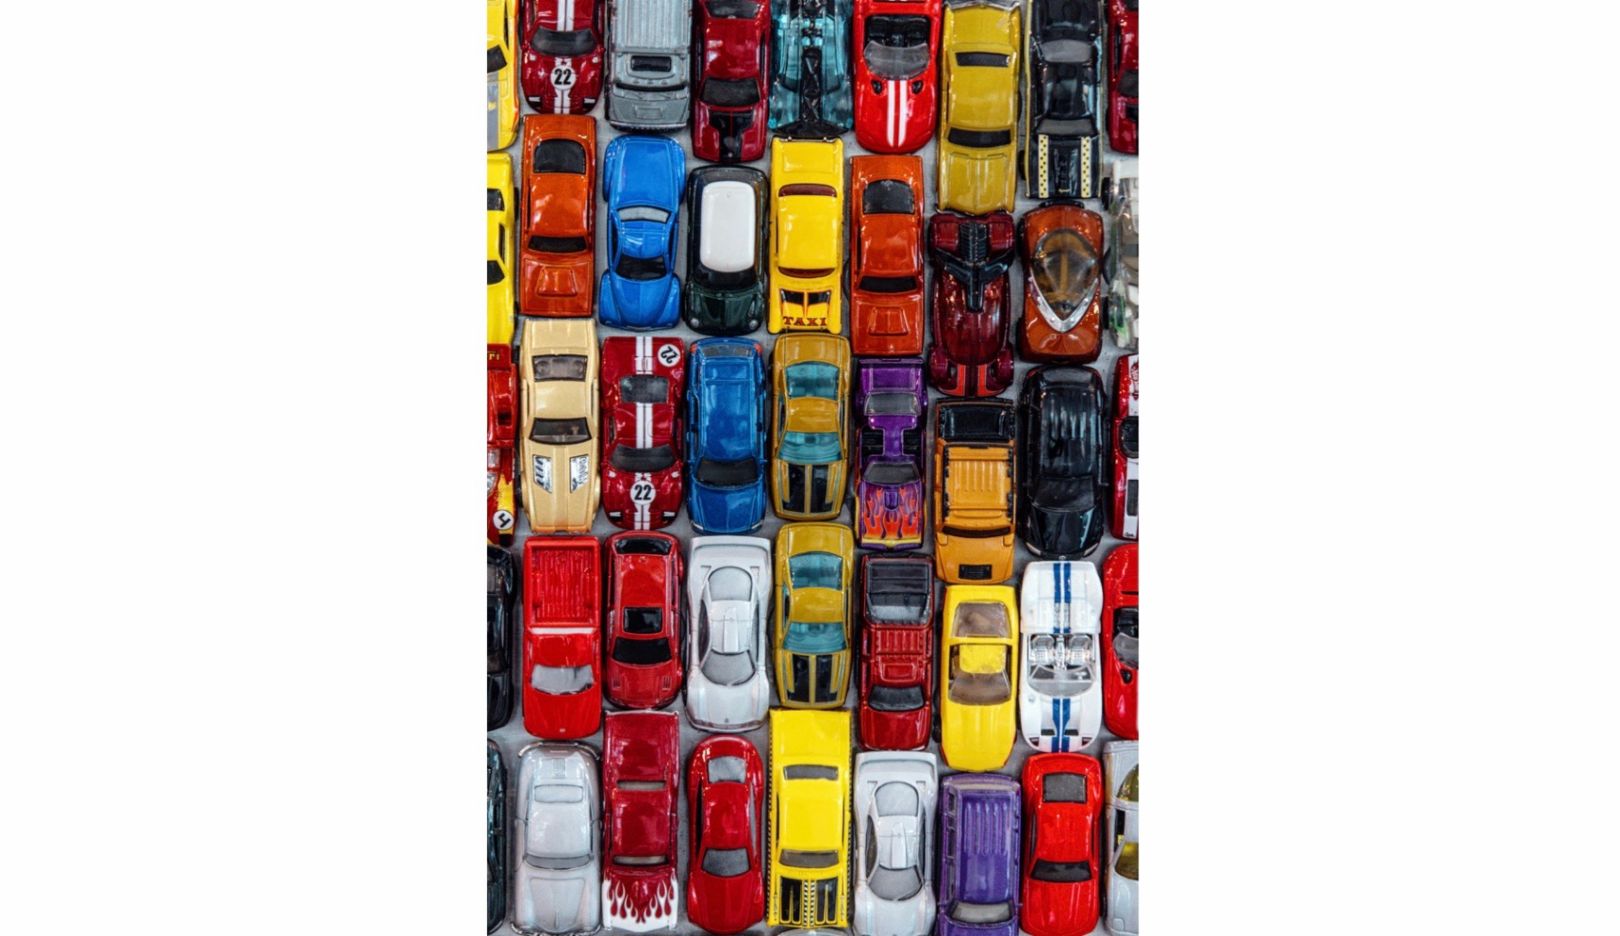 公共の場のための芸術作品：カリフォルニア州ストックトンにある駐車場のために、ヒューザーは3万台のミニカーを使ってコラージュを制作した。